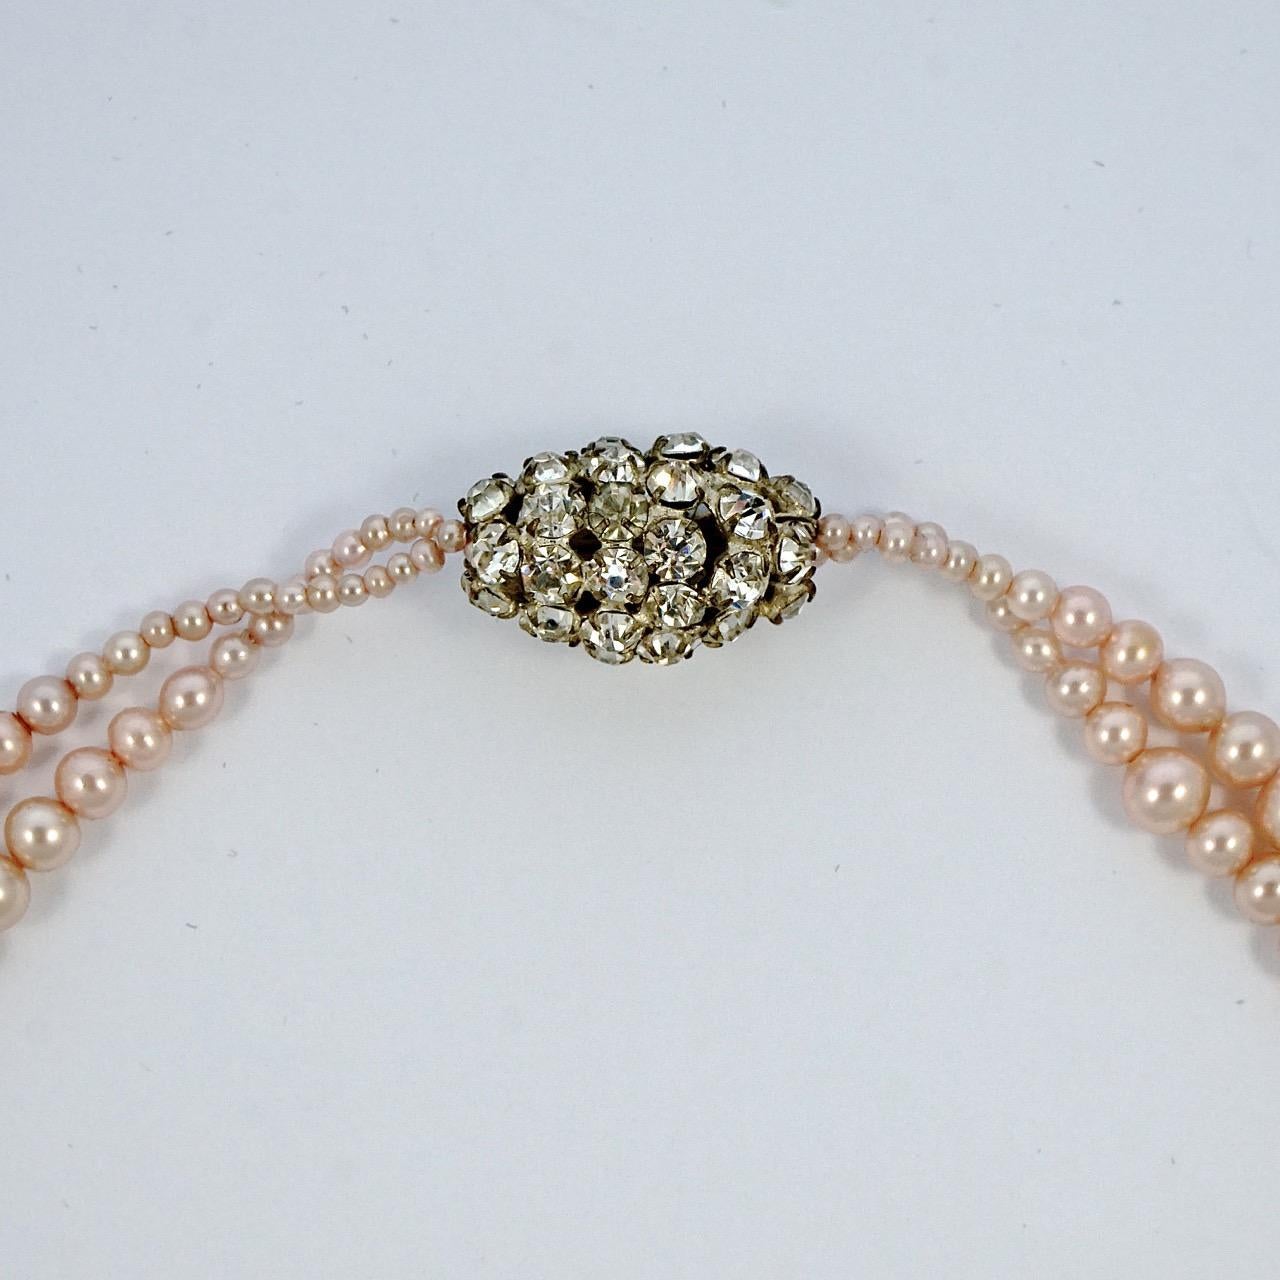 Art Deco blassrosa faux Perle sautoir Halskette mit einem schönen Strassstein Perle. Es handelt sich um eine schmale Halskette, wenn sie geschlossen ist, die Länge ist jedoch verstellbar. Die Halskette misst eine Gesamtlänge von 49 cm. Die Halskette